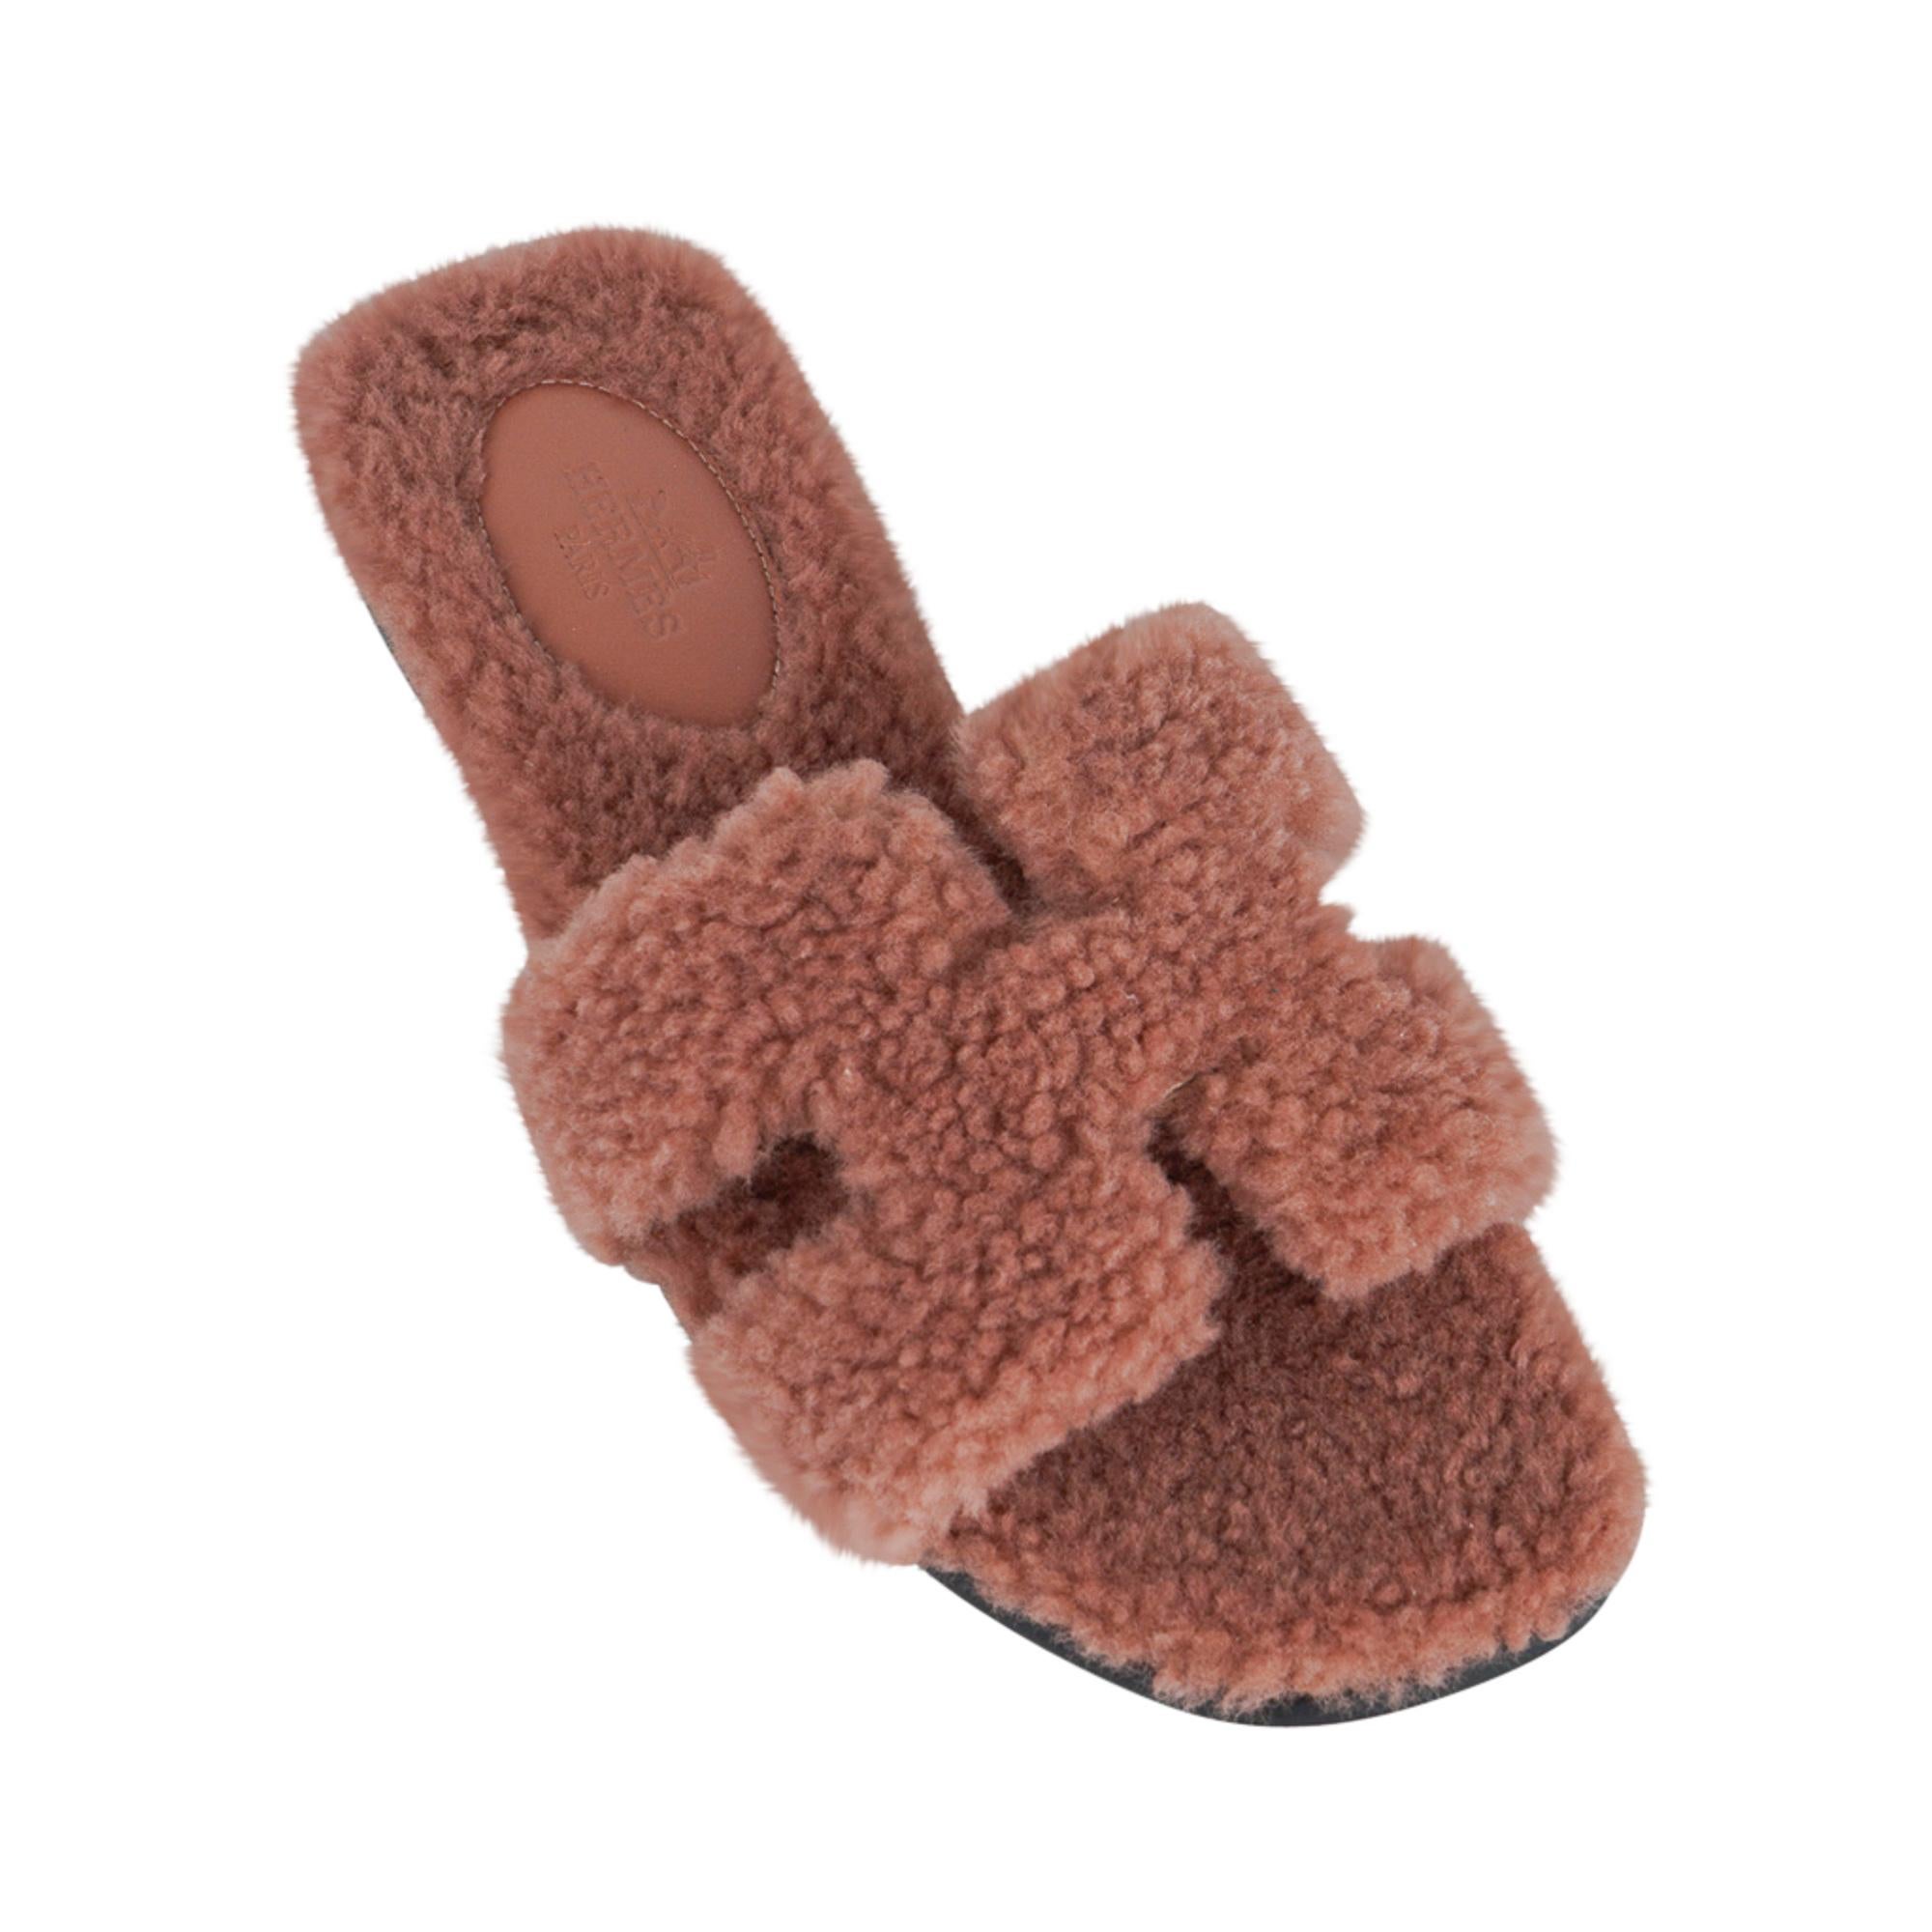 Mightychic vous propose une sandale plate à glissière Hermes Oran Teddy Bear Rose Aube en édition limitée, dont l'authenticité est garantie.
De taille extrêmement rare, cette sandale Hermès Oran est la perfection en matière de flirt avec les pieds